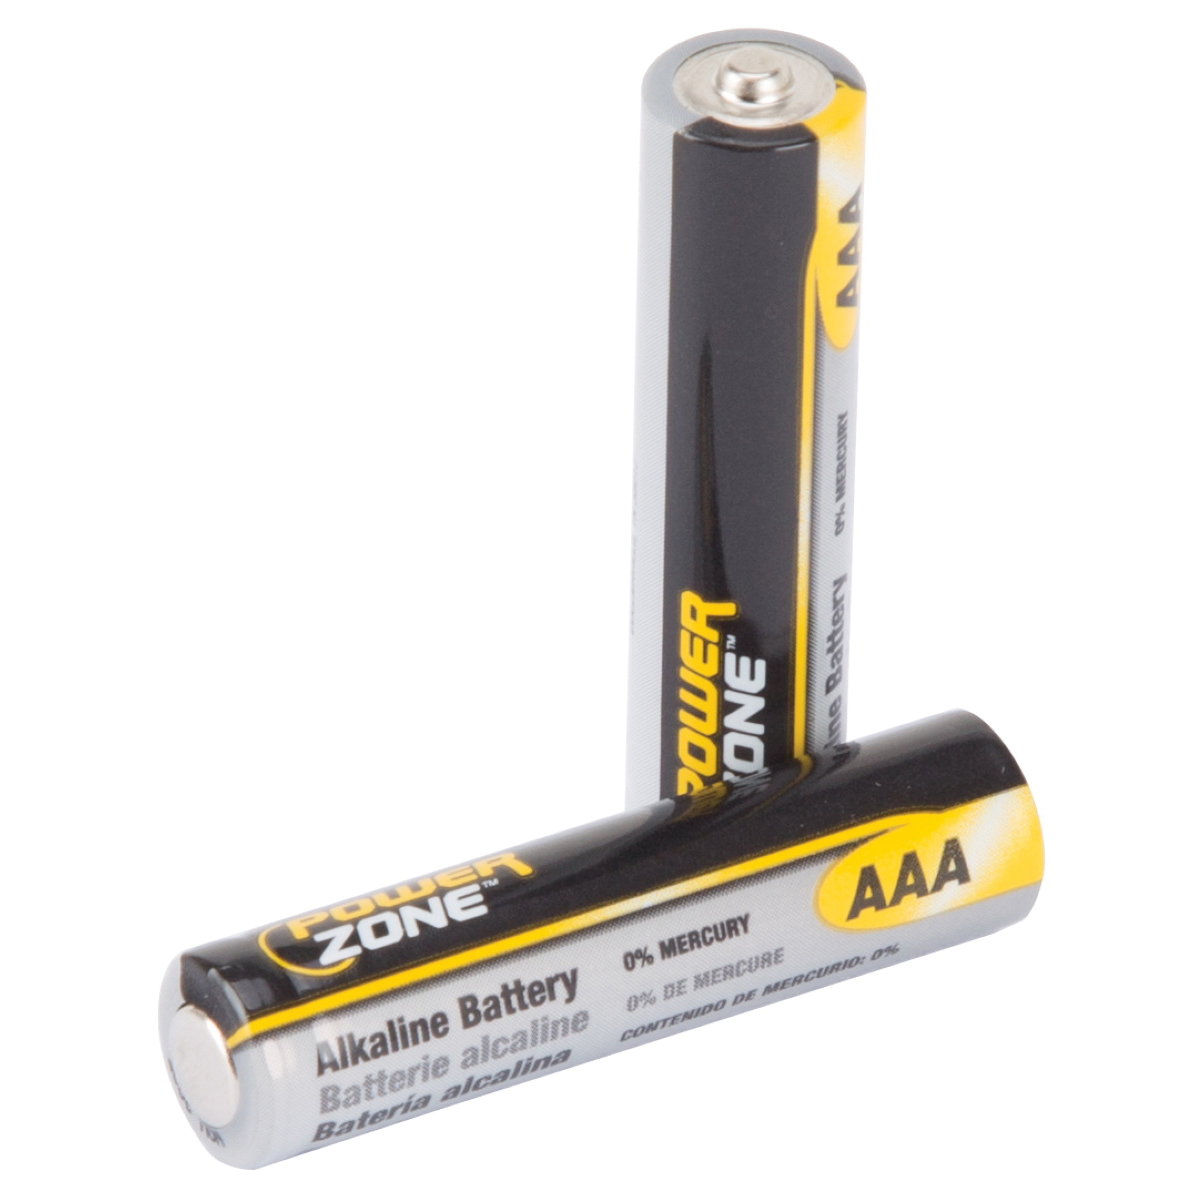 PowerZone LR03-16P, 1.5 V Battery, AAA Battery, 16 pk